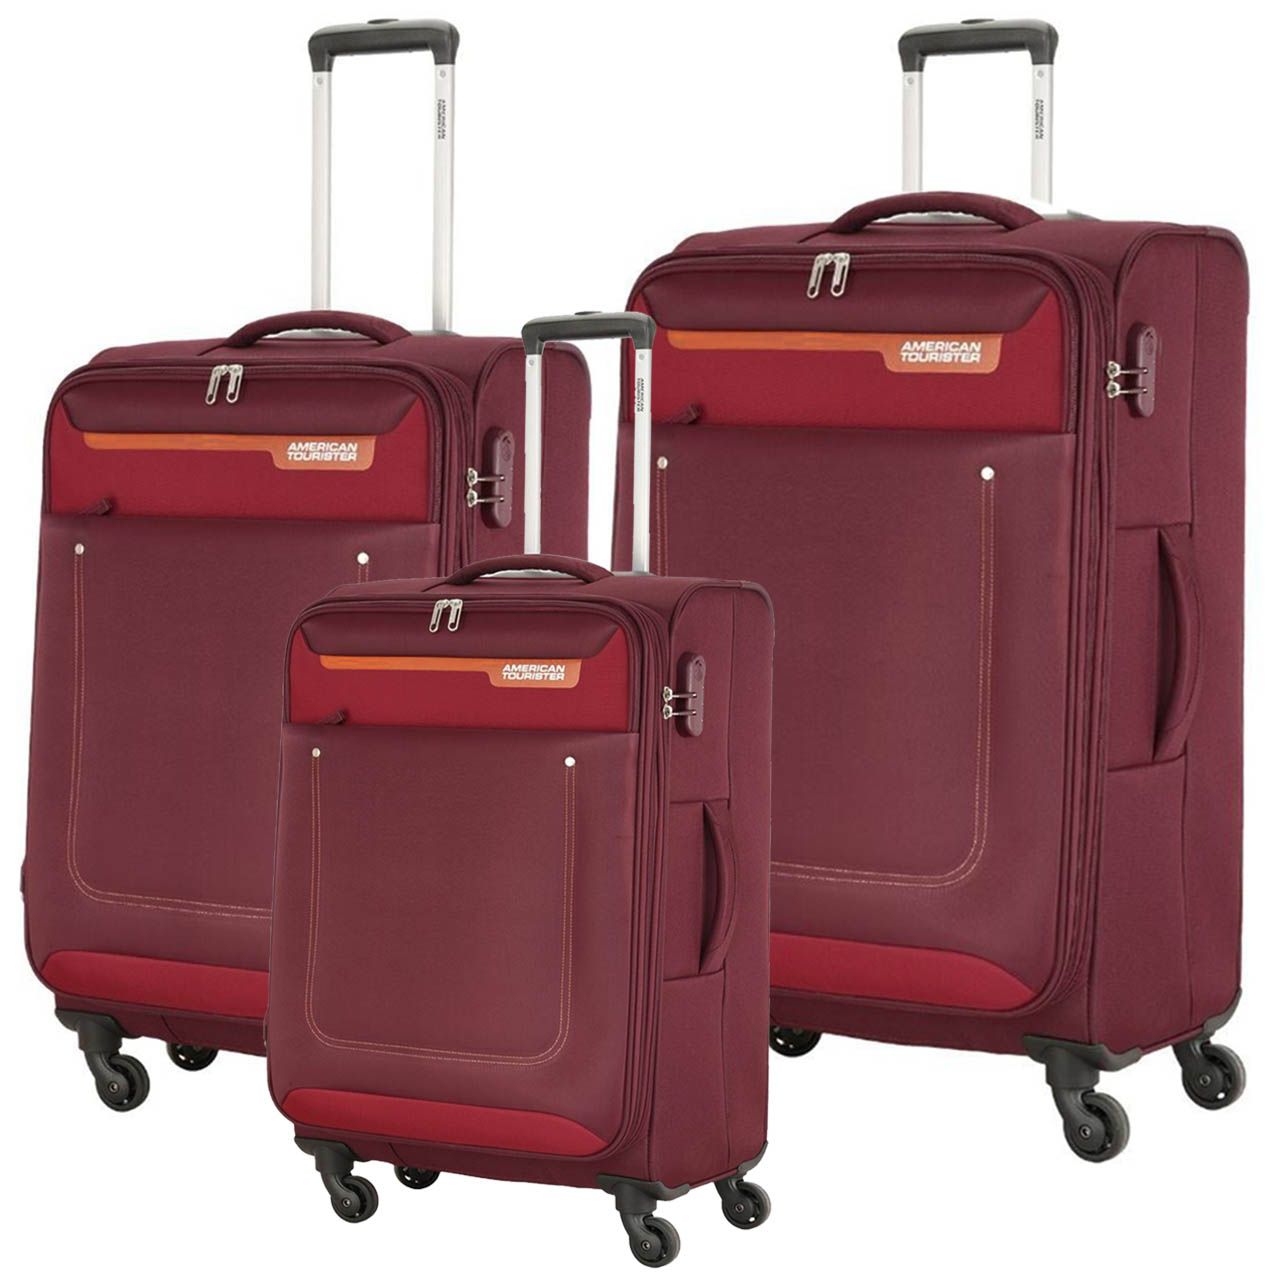 مجموعه سه عددی چمدان امریکن توریستر مدل JACKSON FP6 -  - 1